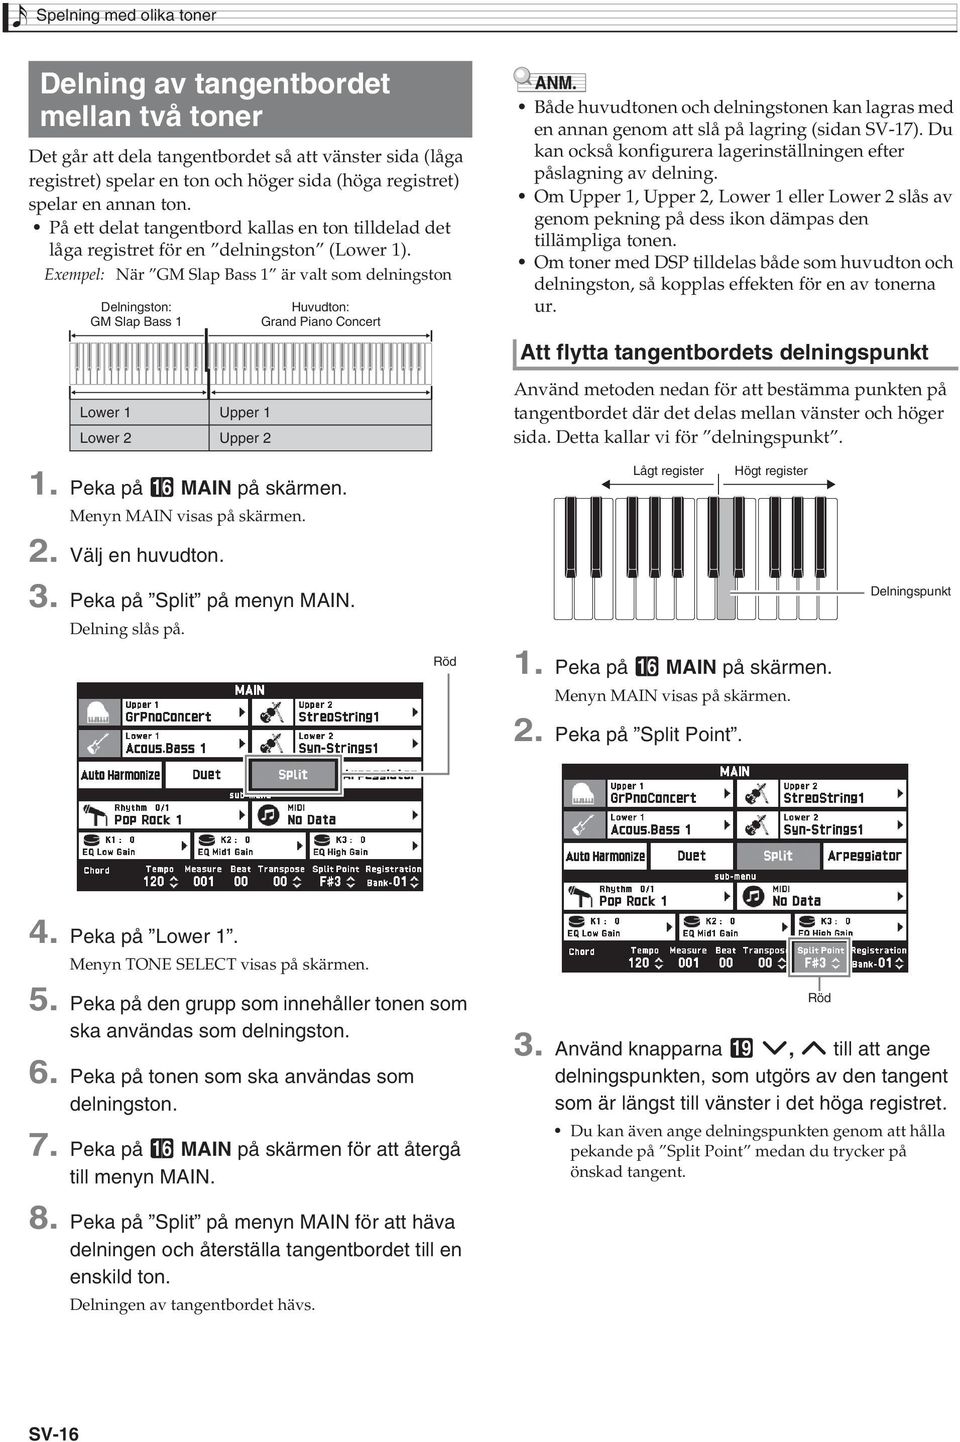 Exempel: När GM Slap Bass 1 är valt som delningston Delningston: GM Slap Bass 1 Huvudton: Grand Piano Concert Både huvudtonen och delningstonen kan lagras med en annan genom att slå på lagring (sidan